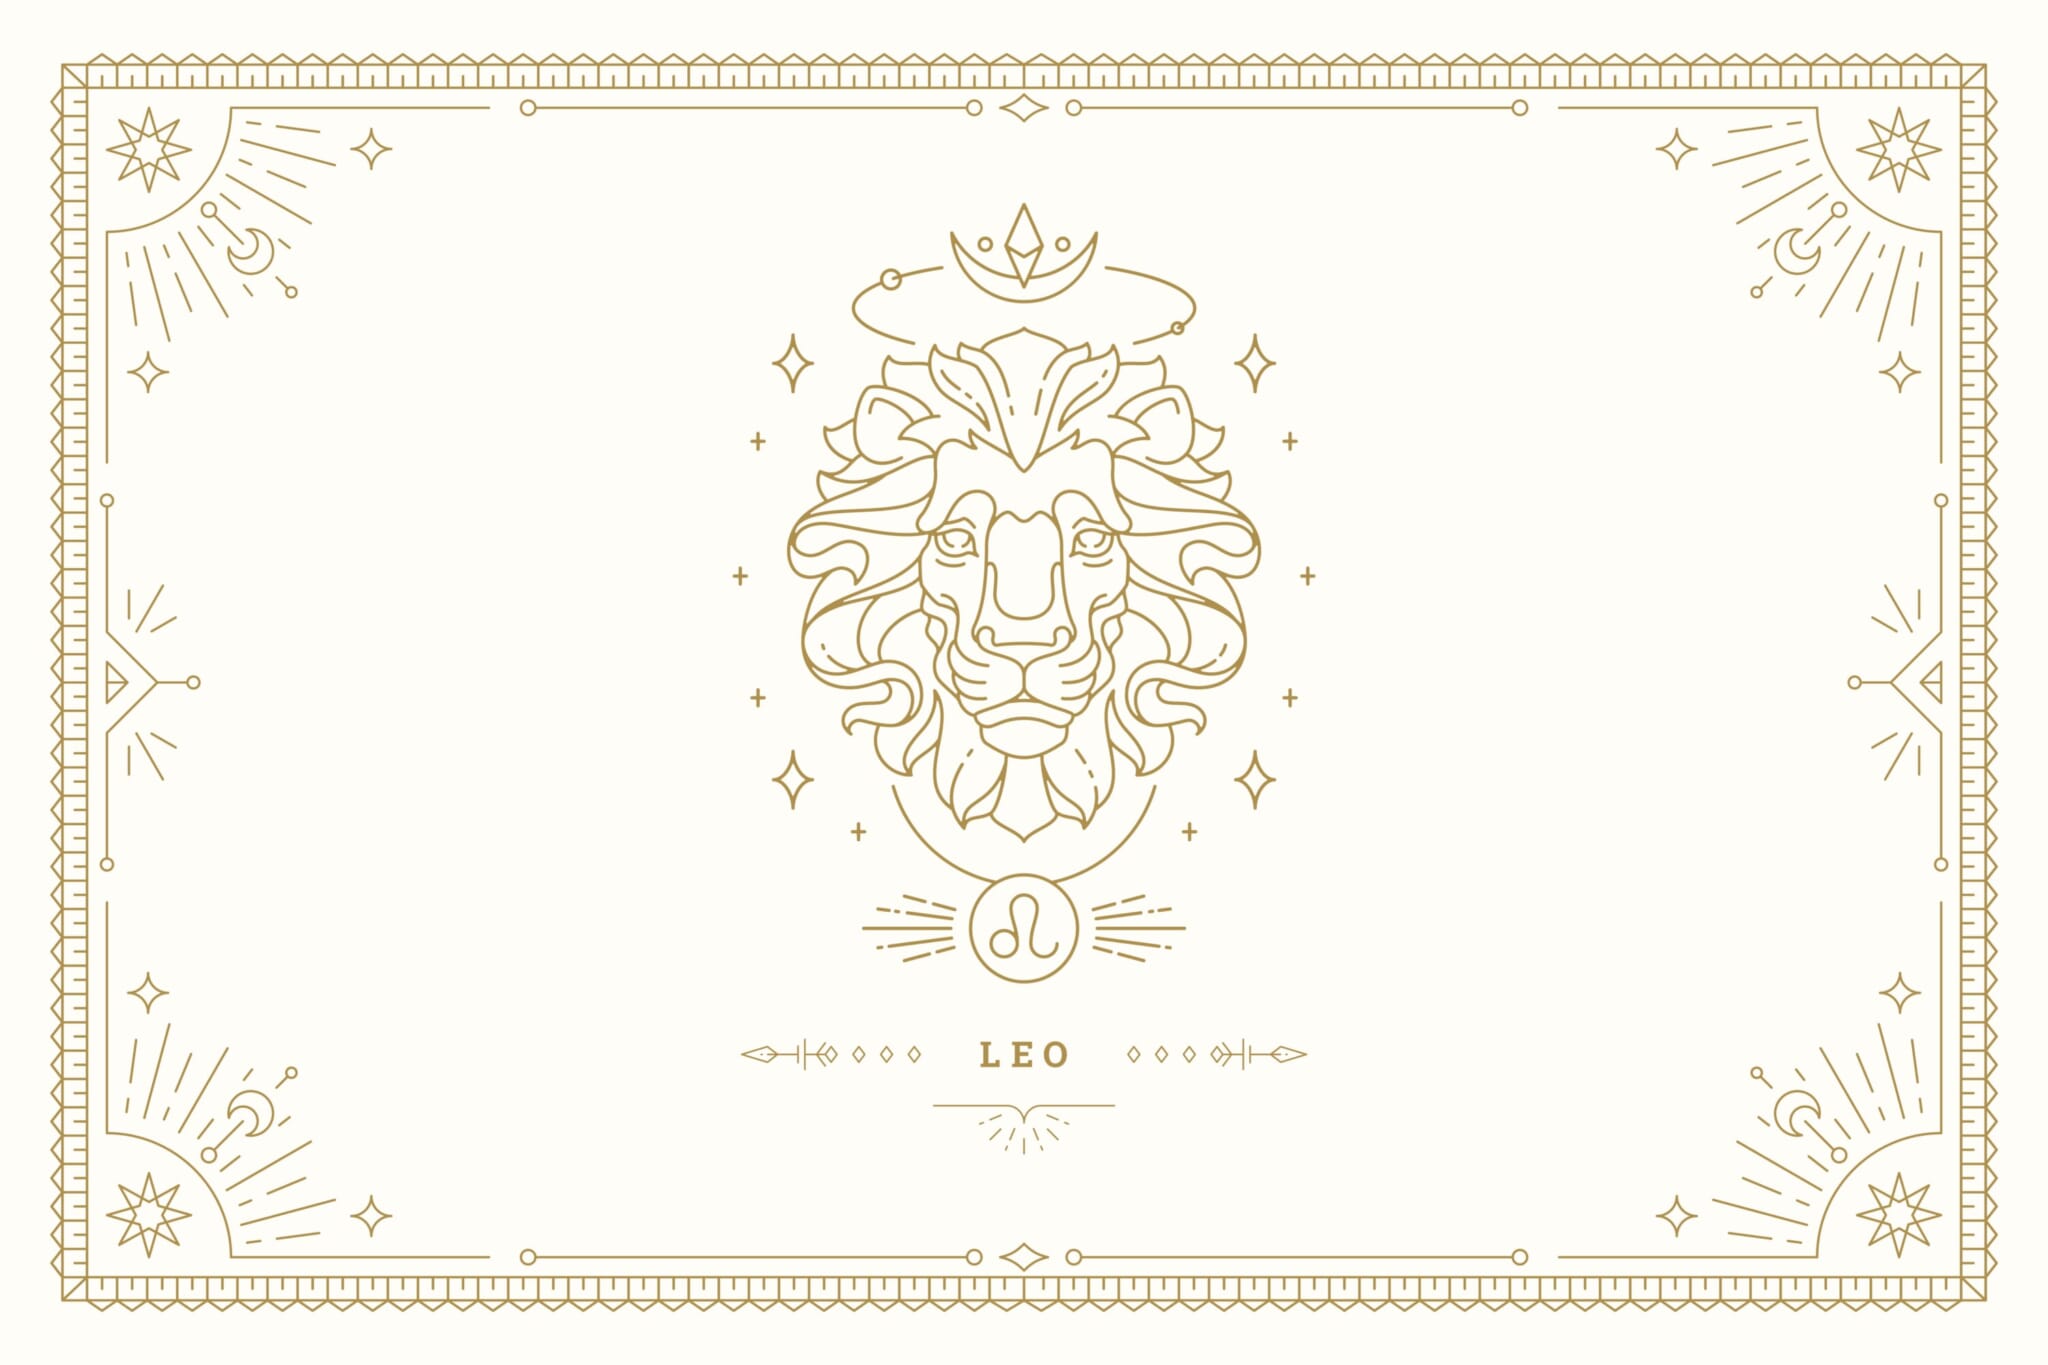 Leo march horoscope 